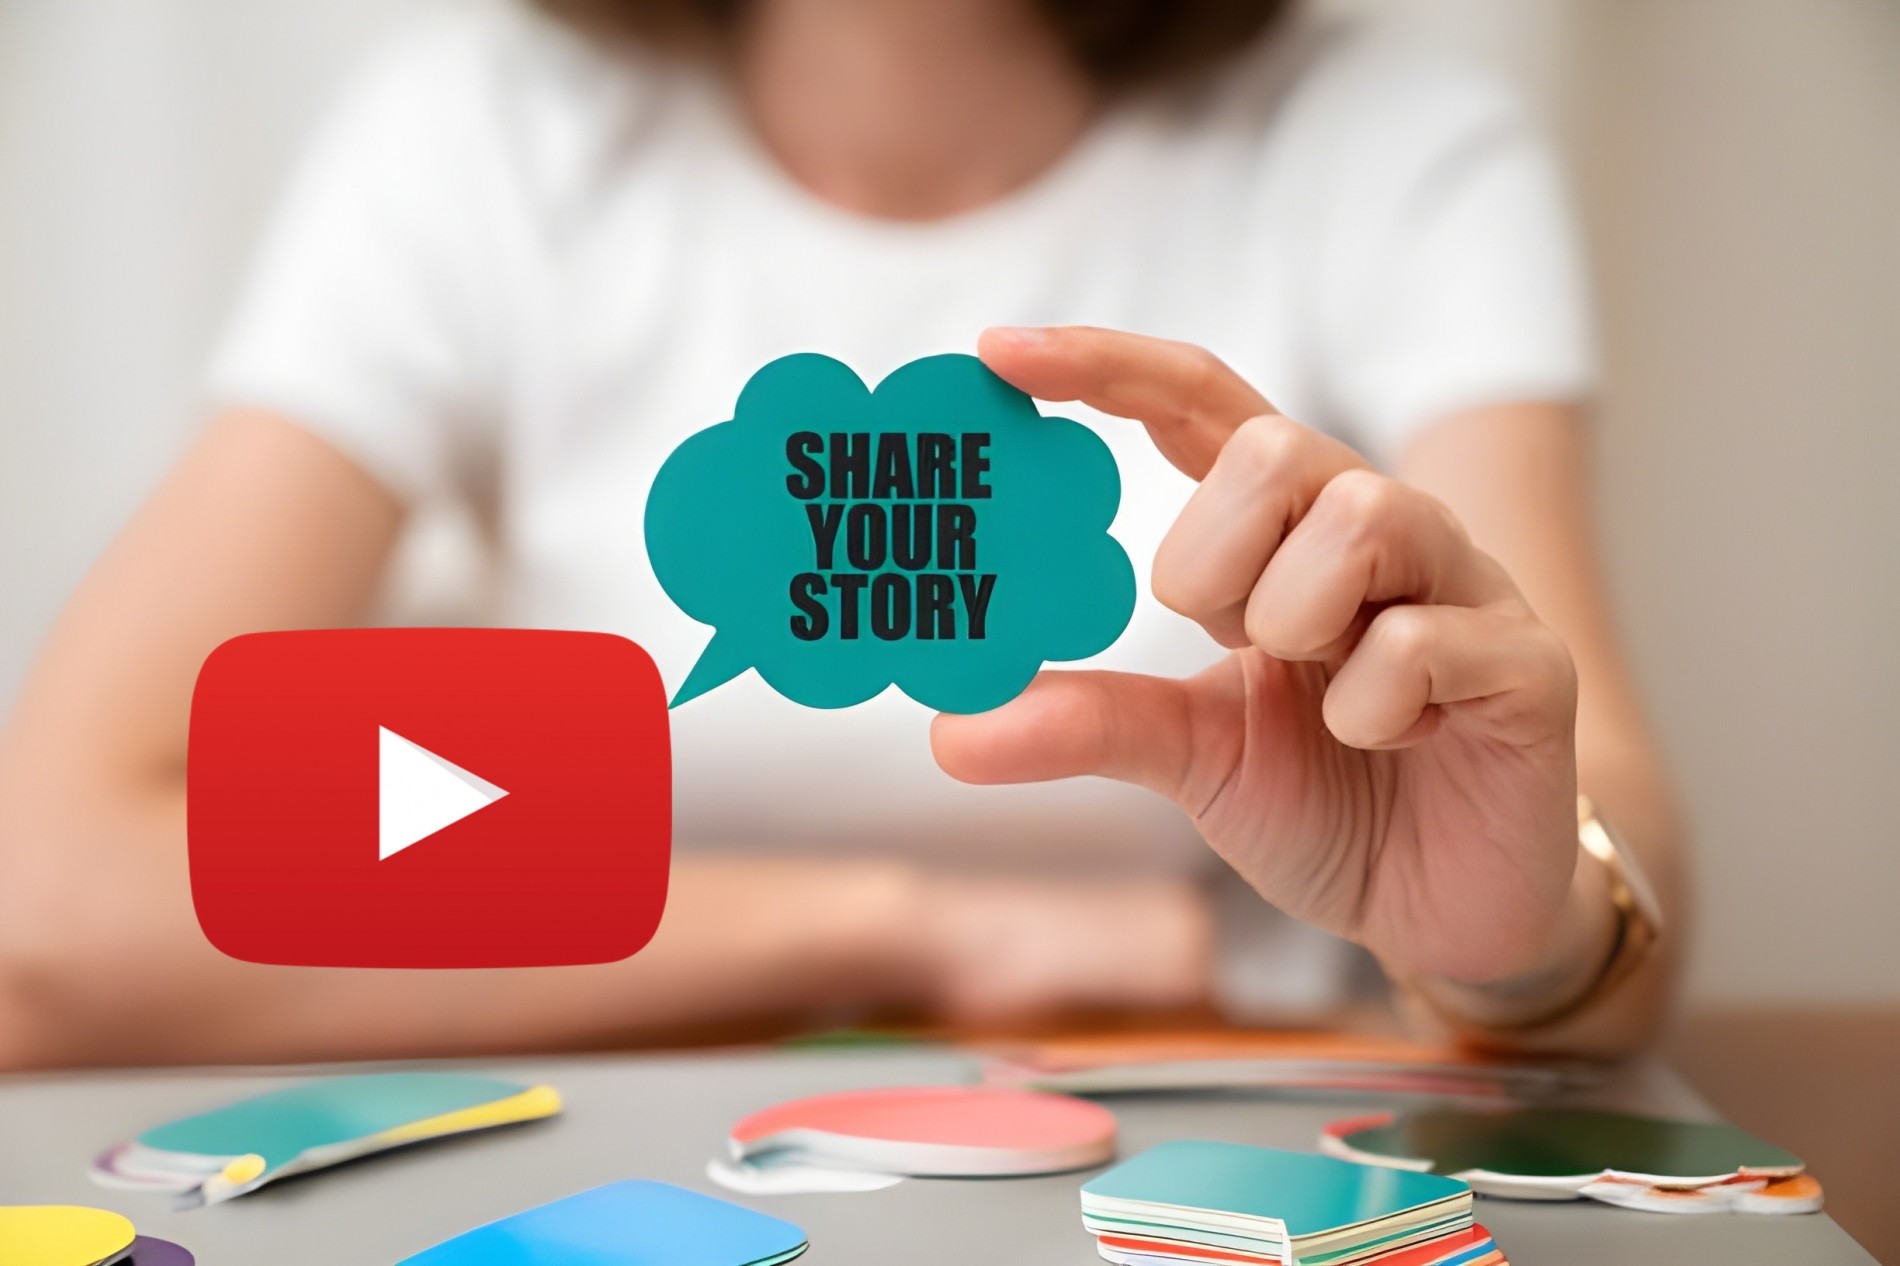 Độc quyền: YouTube chấm dứt tính năng Câu chuyện và tập trung vào bài đăng cộng đồng và YouTube Shorts, YouTube chấm dứt tính năng Câu chuyện và tập trung vào Shorts và bài đăng trong Cộng đồng để thu hút nhiều tương tác hơn từ người dùng.